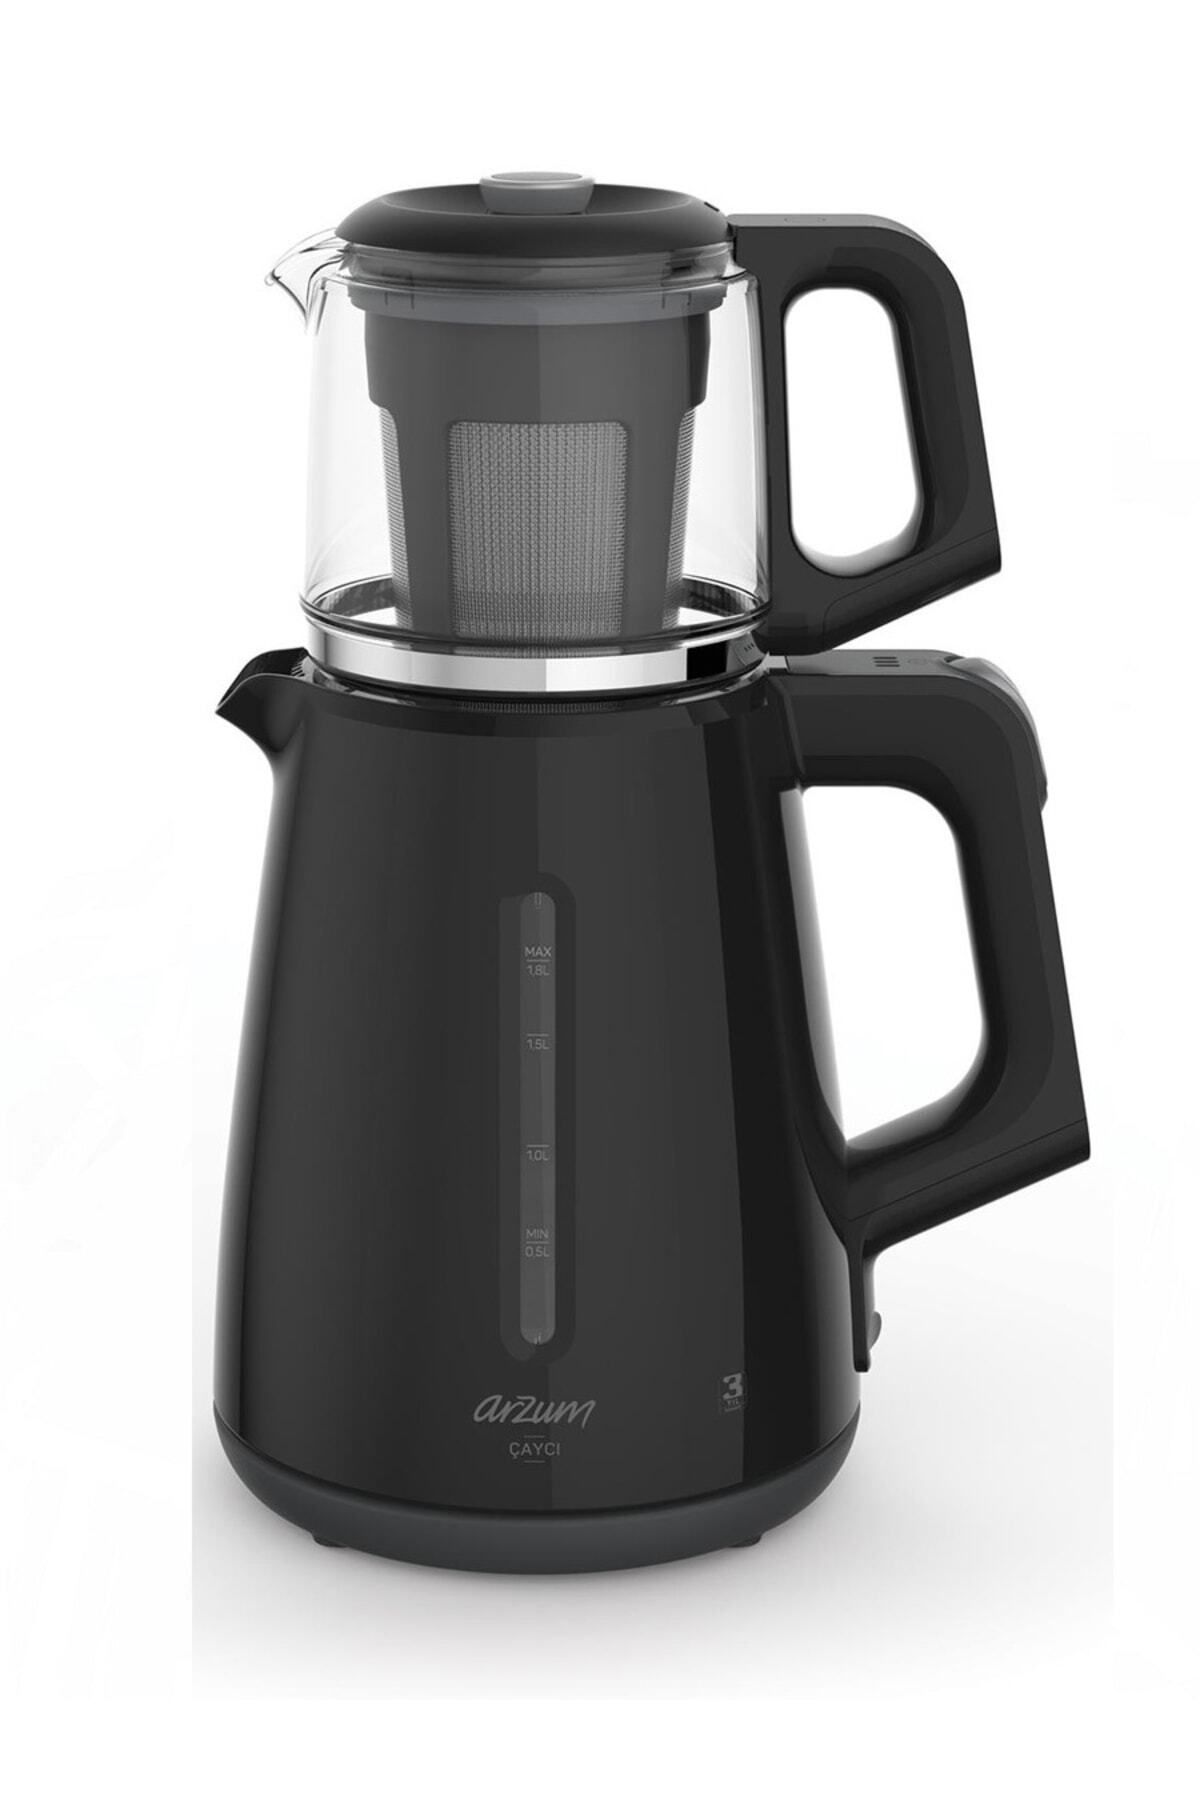 Arzum Yeni Nesil Ar3061 Çaycı Siyah 1700 W Cam Demlikli Çay Makinesi